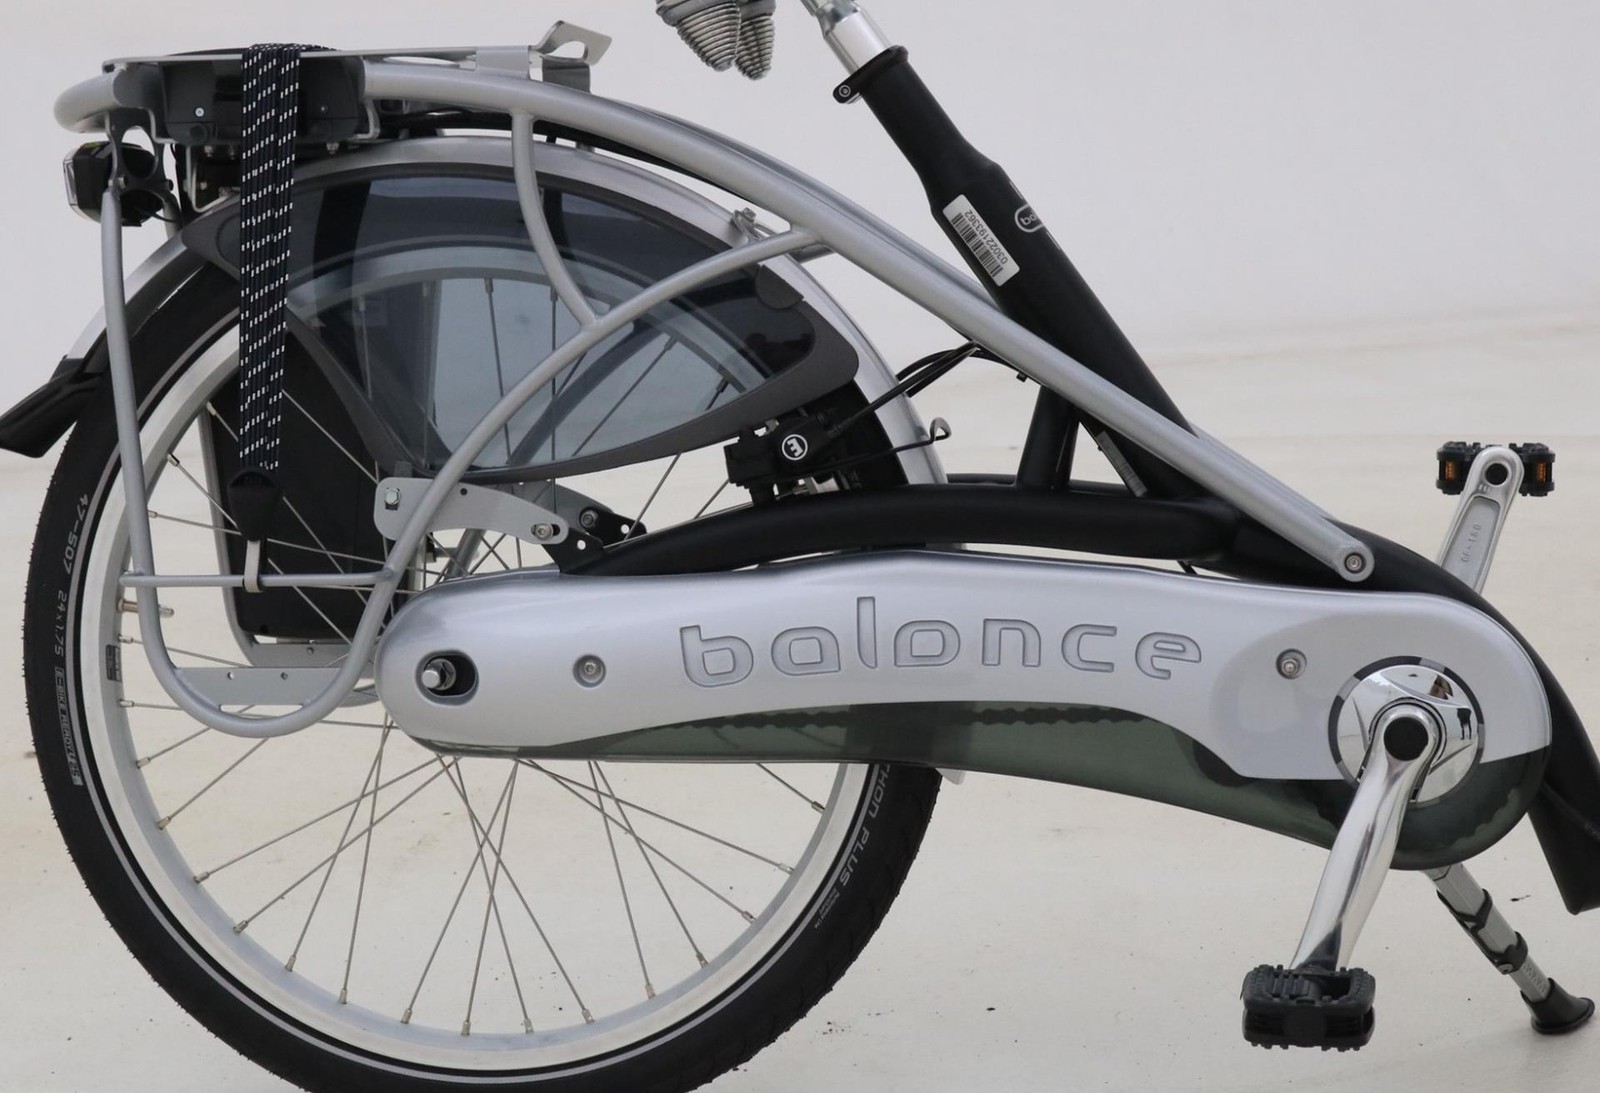 Najbezpieczniejszy elektryczny rower. Takim tytułem chwali się Balance od Van Raam